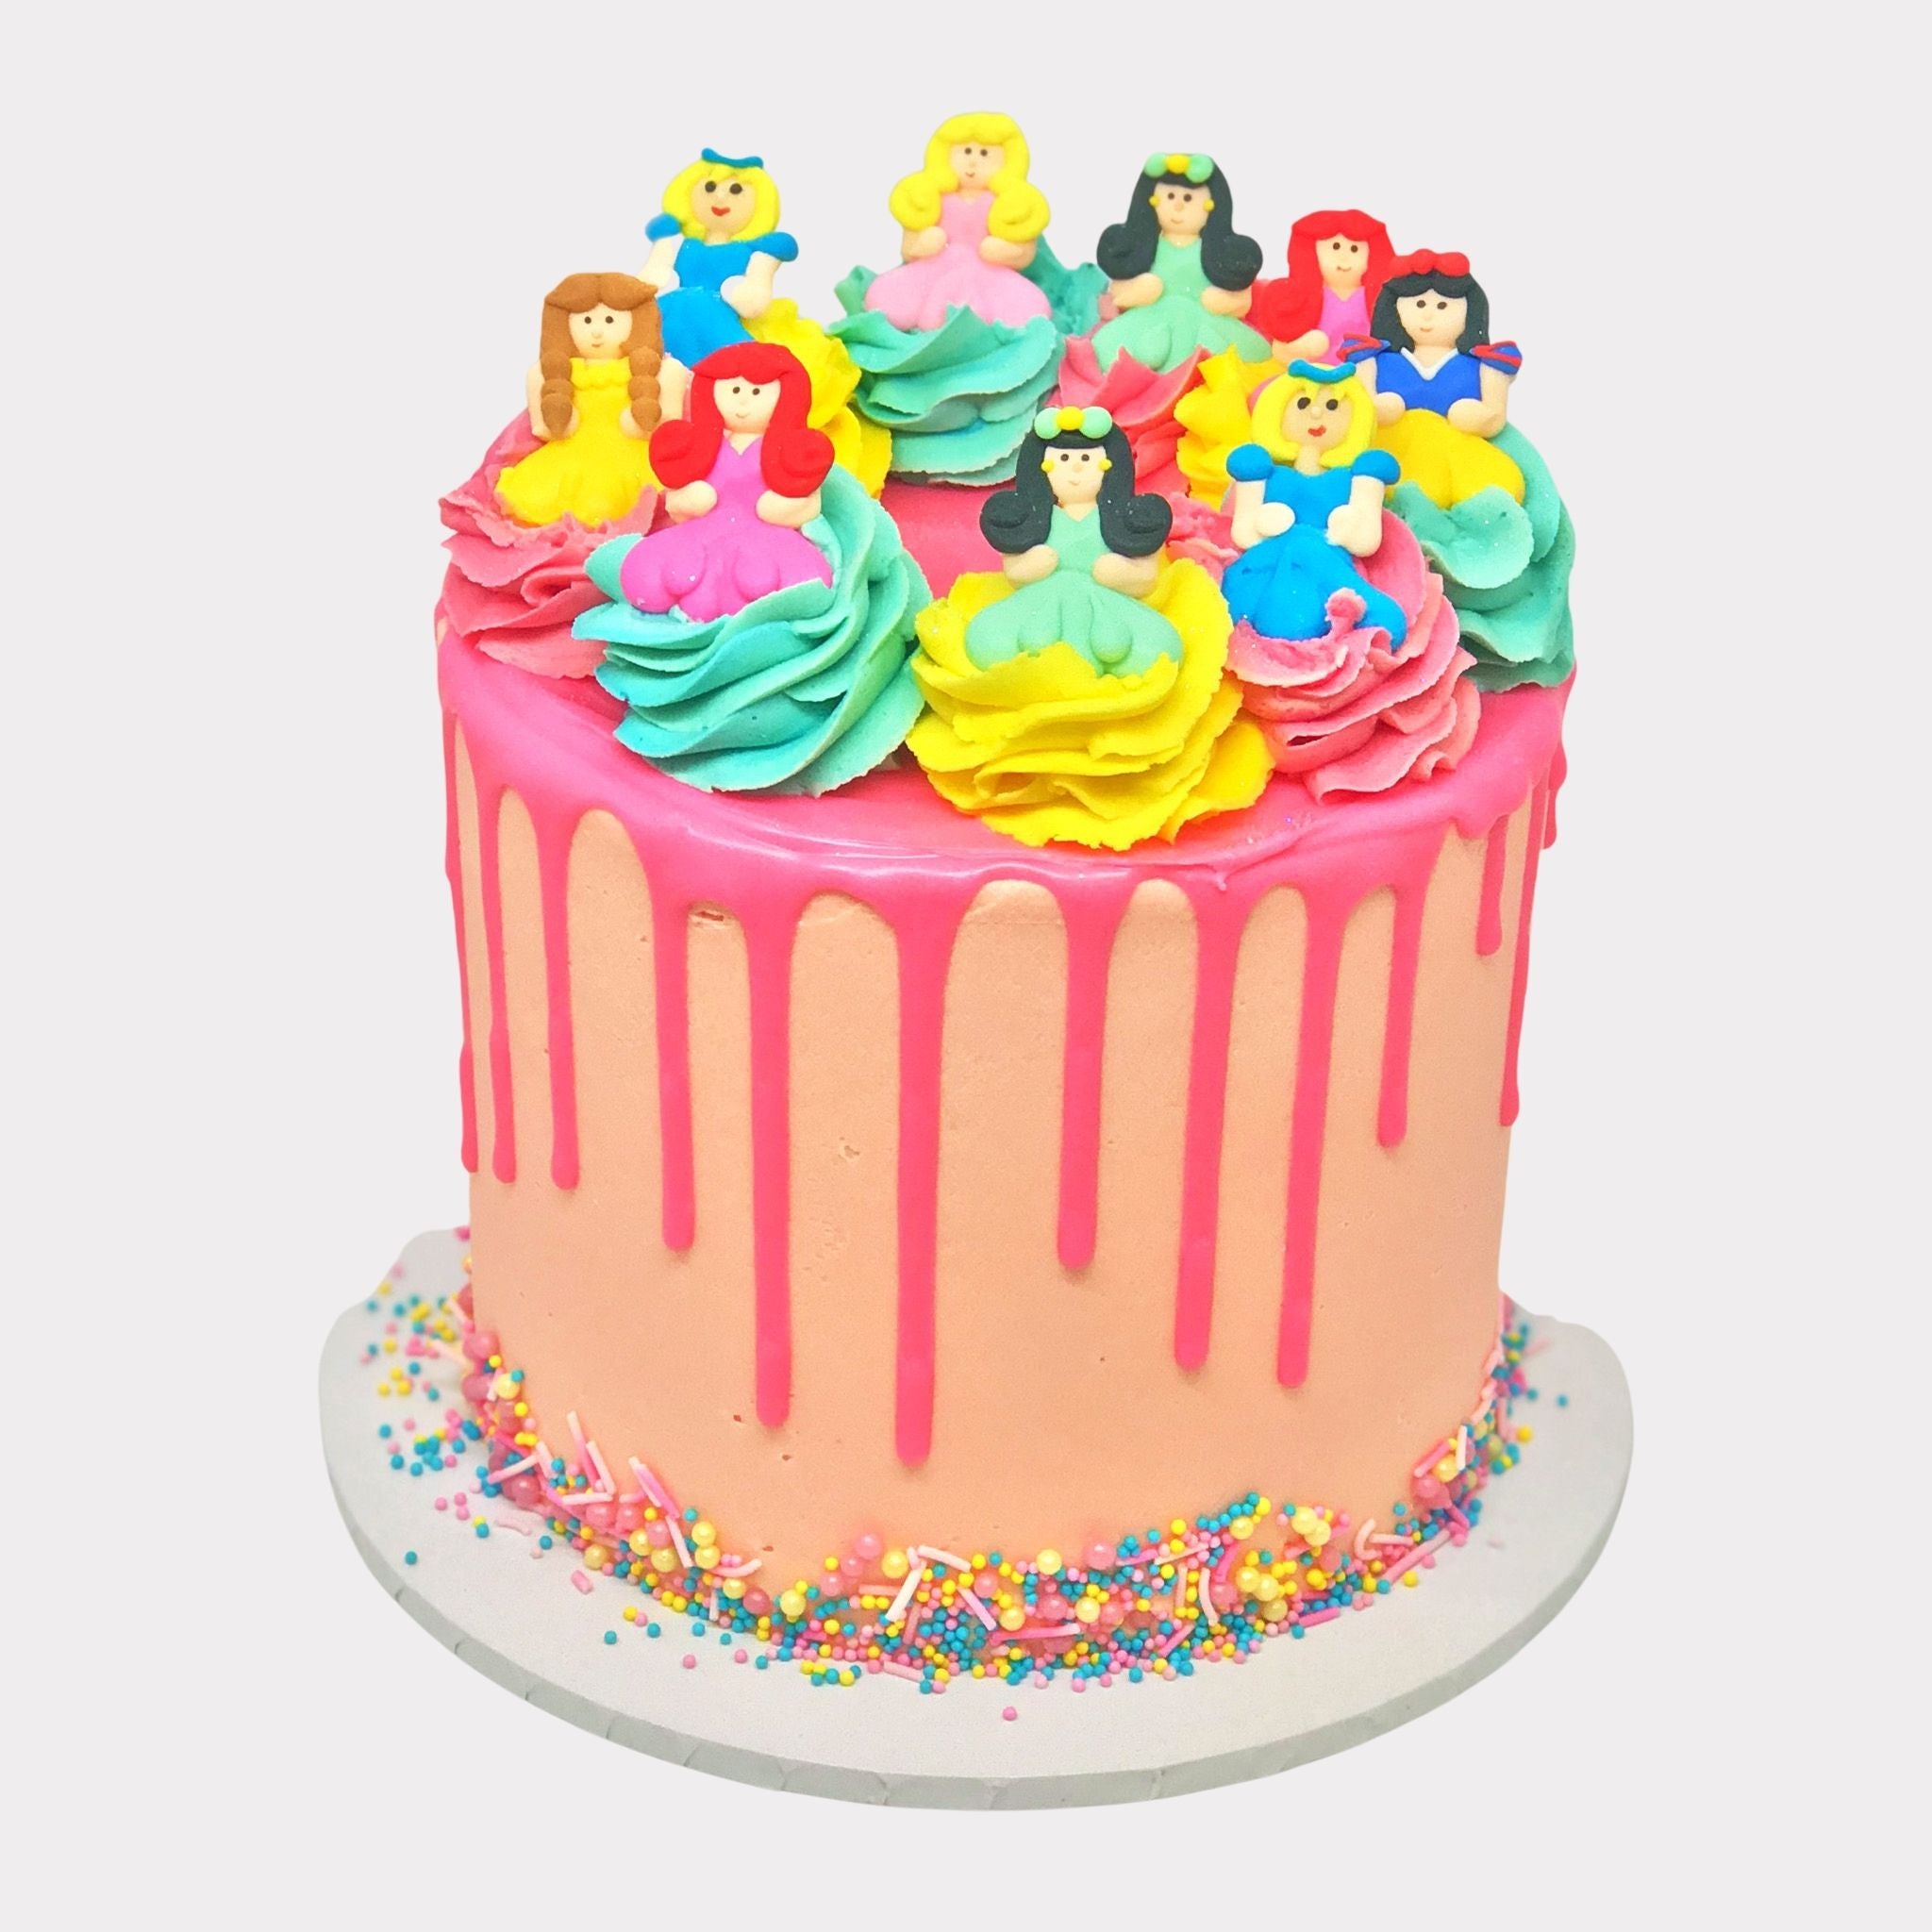 DISNEY PRINCESS BIRTHDAY CAKE | THE CRVAERY CAKES